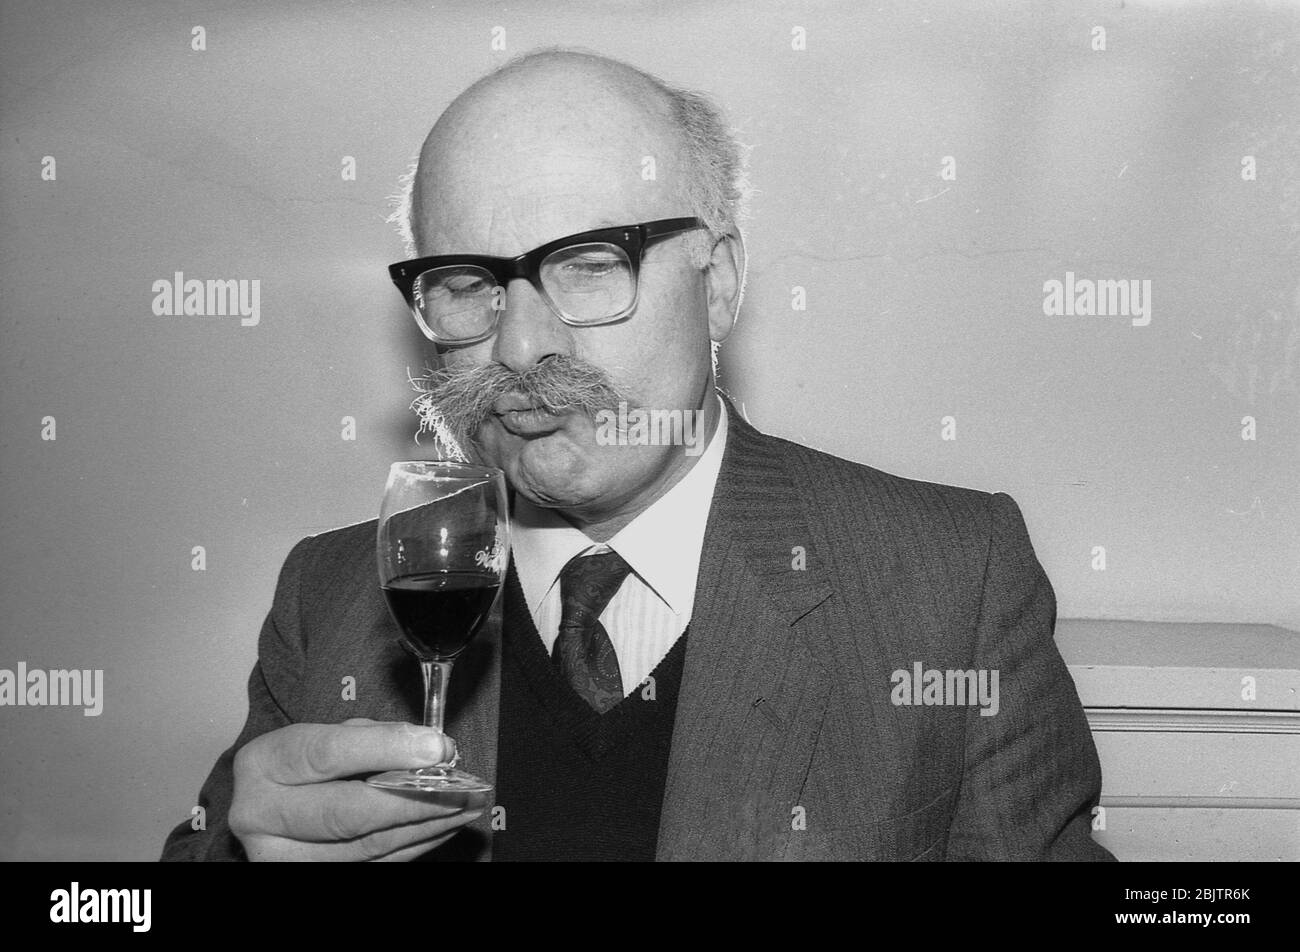 1980, historique, lors d'une dégustation de vins, un homme portant une veste et une cravate A et avec une moustache bushy qui ronfle un verre de vin rouge, pour sentir l'arôme, le bouquet du vin, Angleterre, Royaume-Uni. Banque D'Images